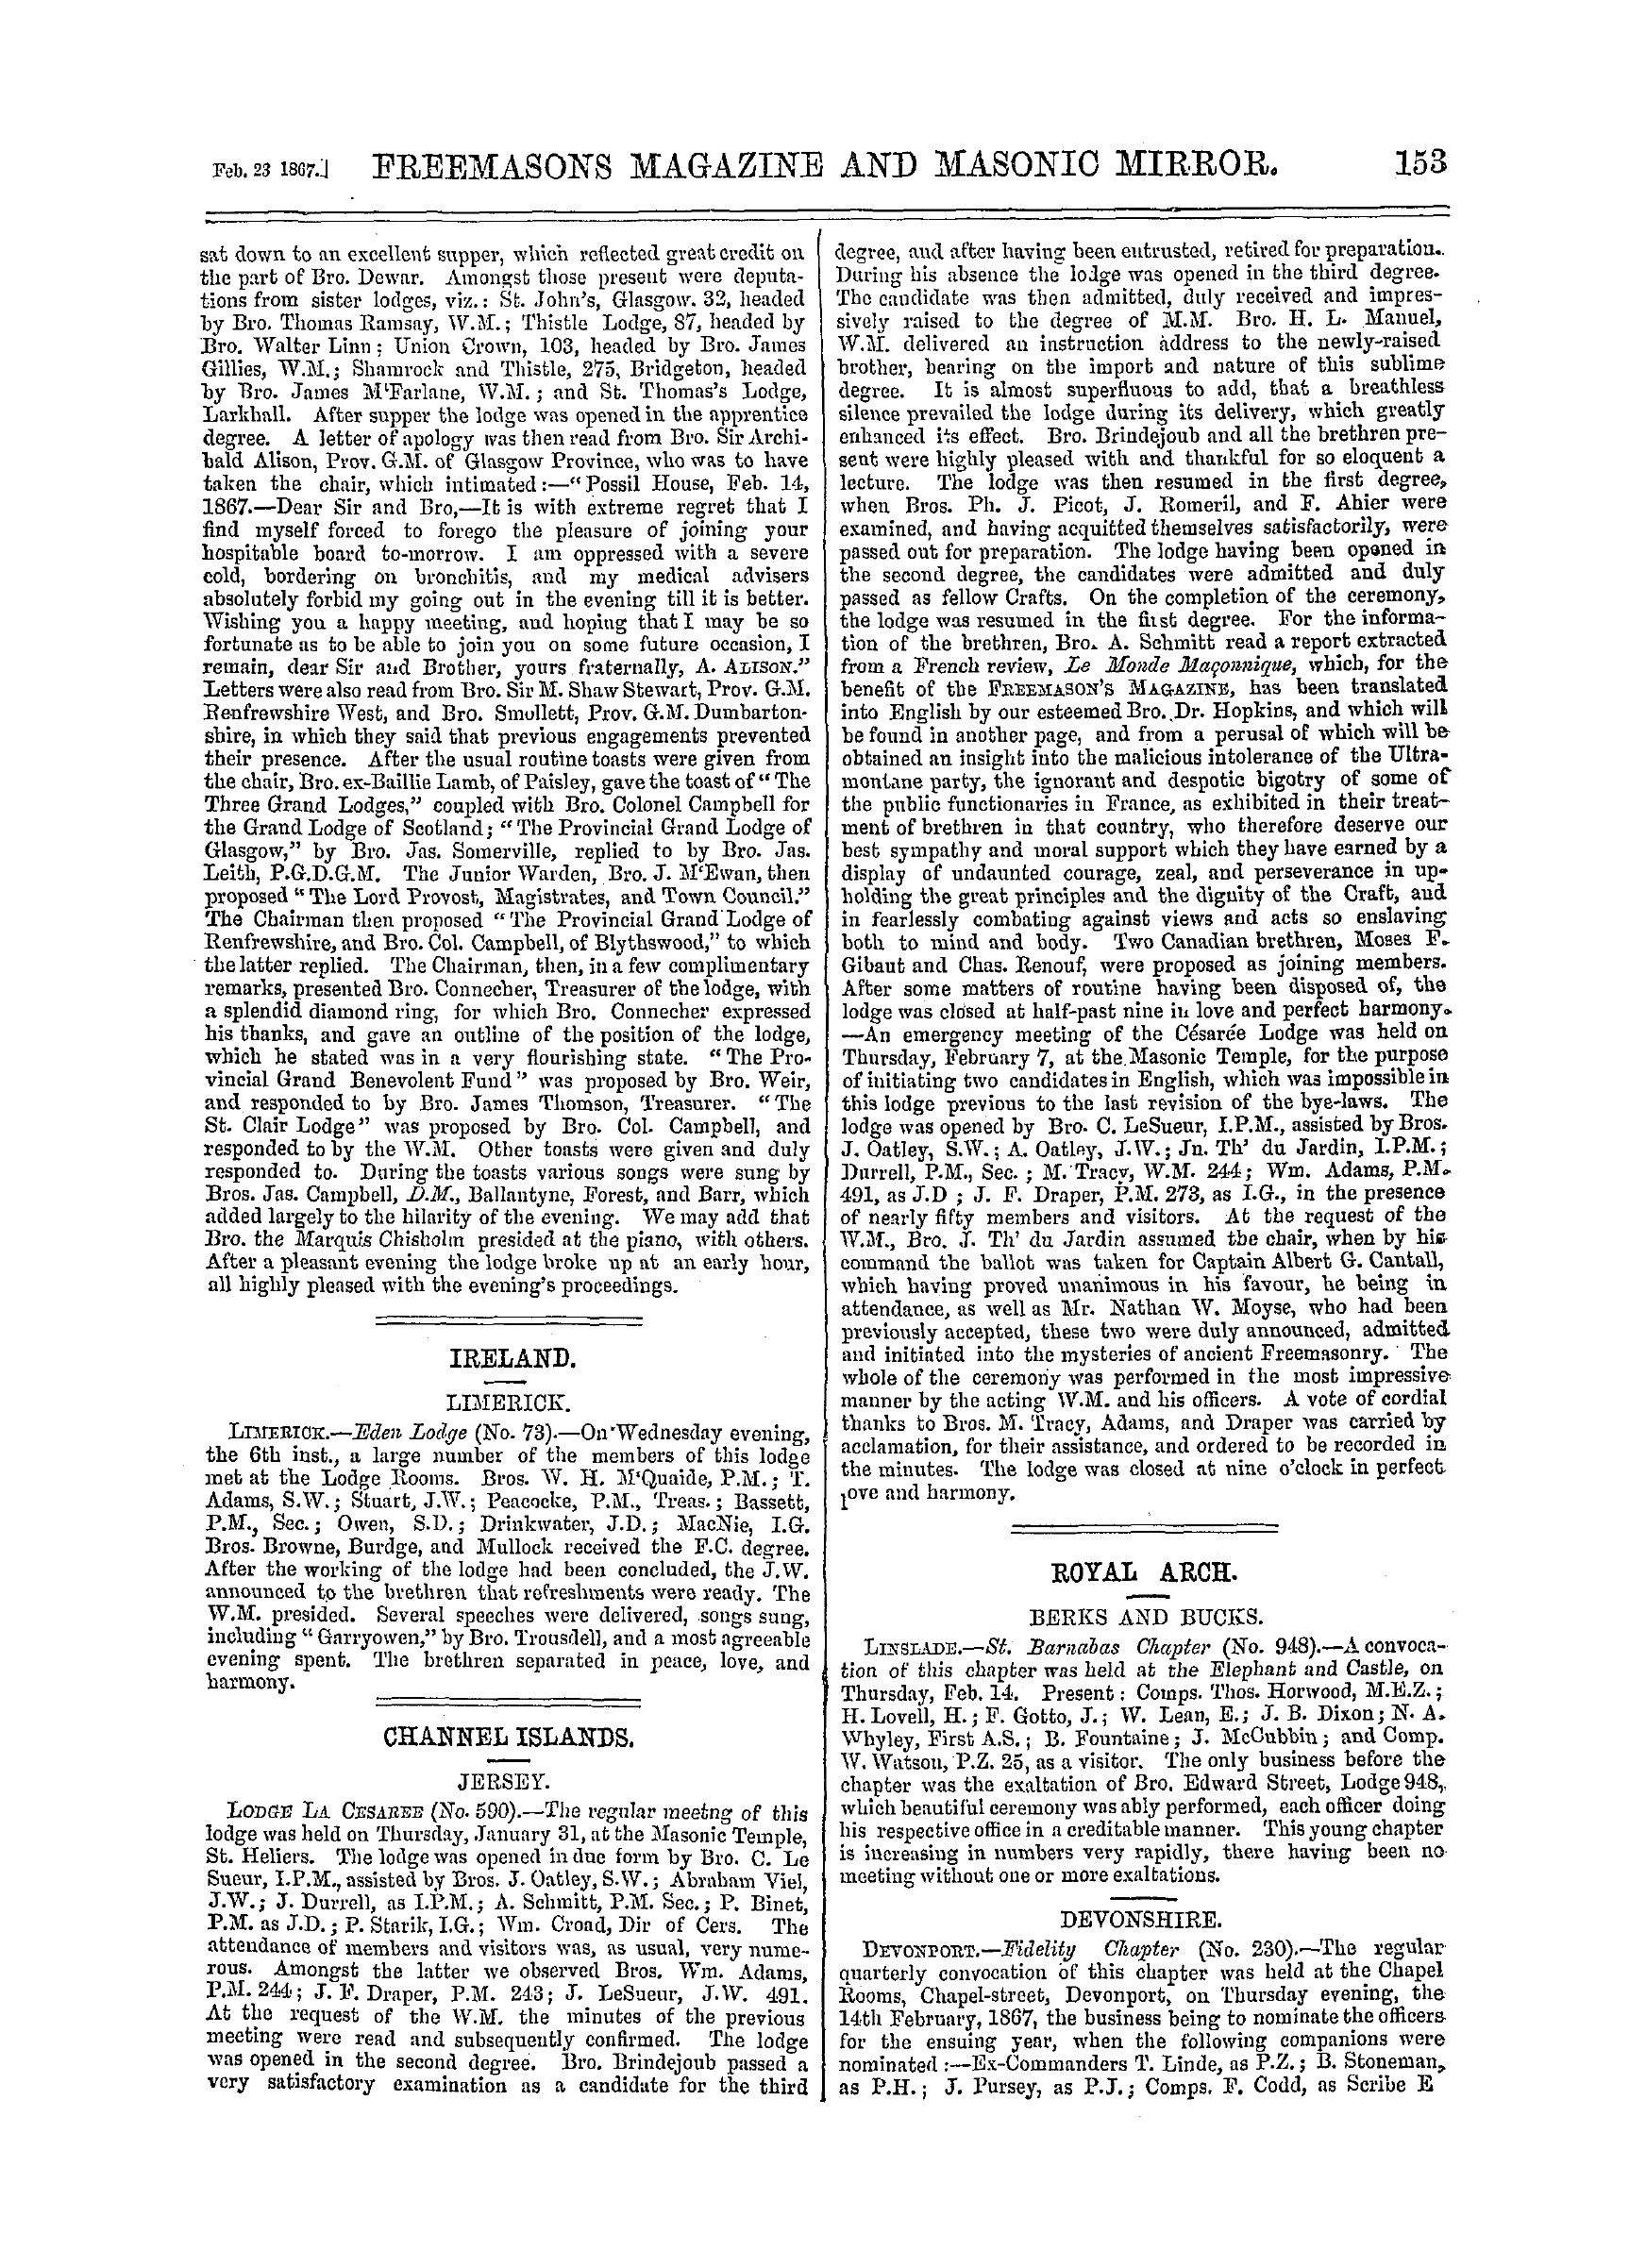 The Freemasons' Monthly Magazine: 1867-02-23: 13